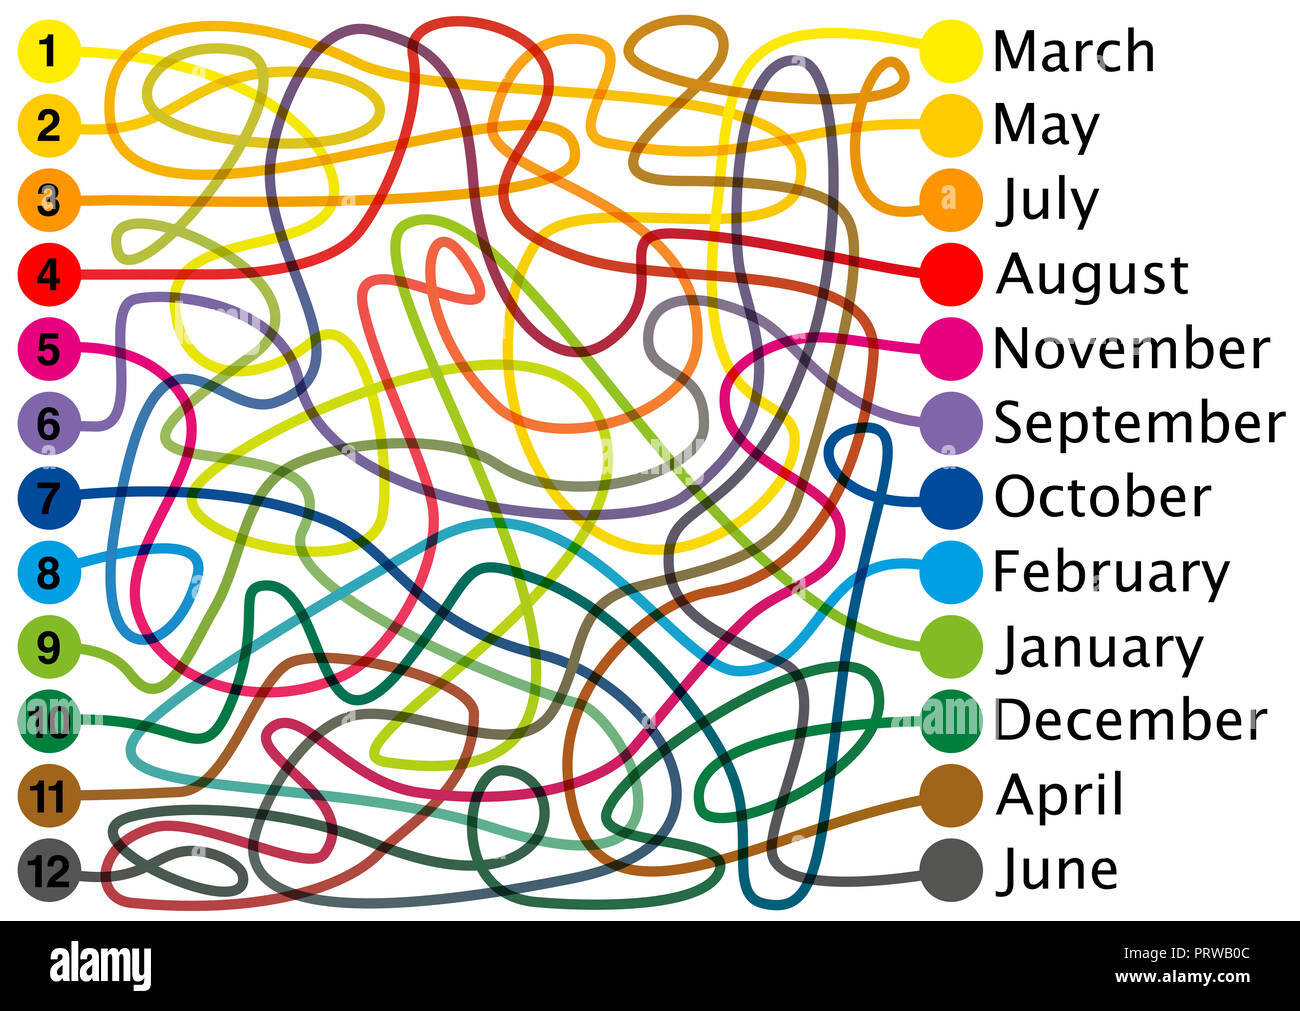 Les douze mois de l'année labyrinthe. Connecter les lignes de couleur, de trouver le bon chemin à travers les complexités du labyrinthe coloré d'un bout à l'autre. Banque D'Images